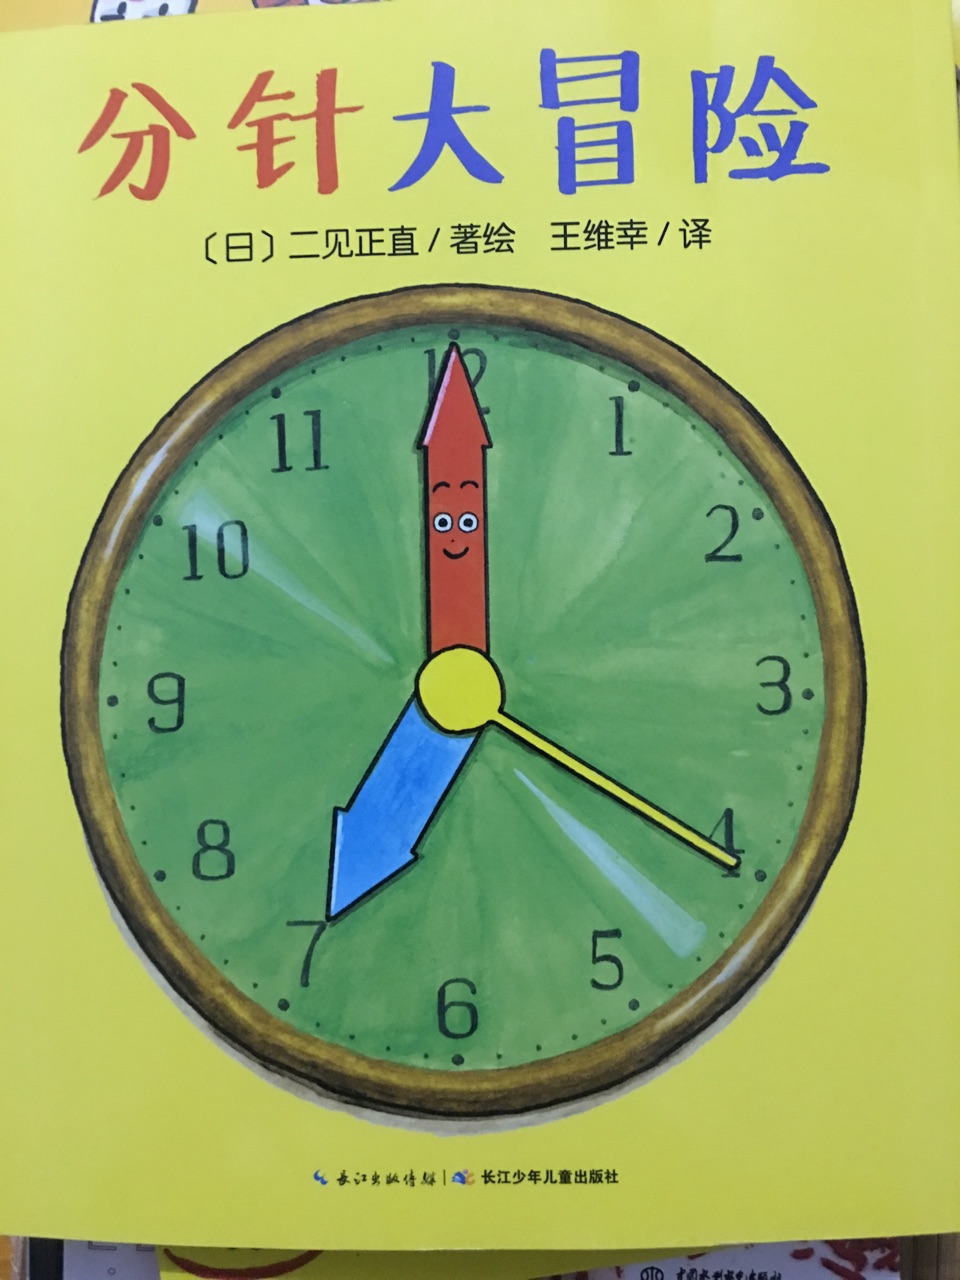 很满意这样的书，对小孩认识时钟很有帮助